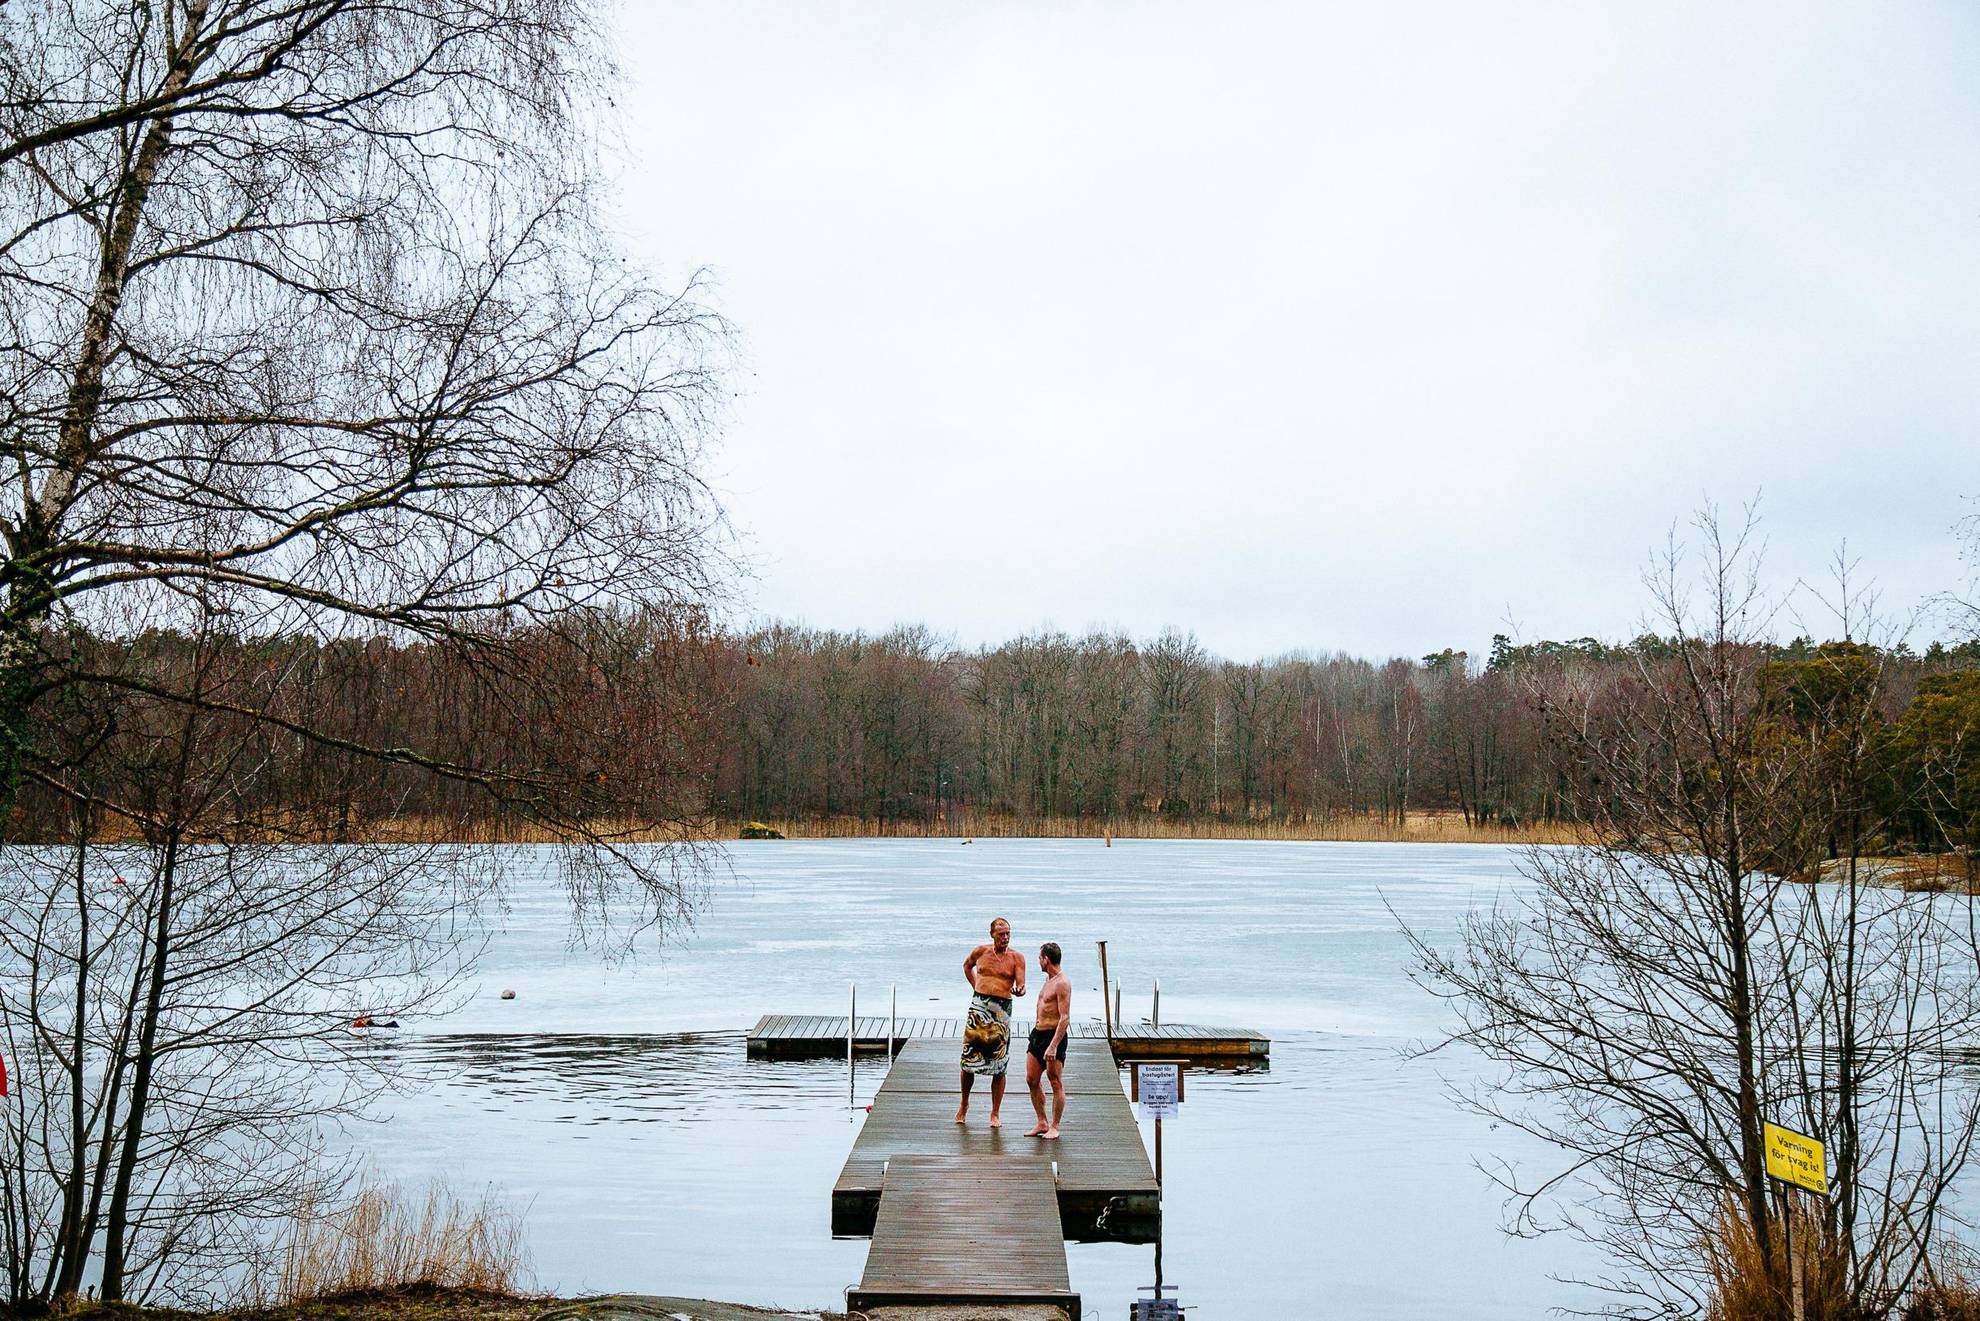 Twee mannen lopen op een steiger nadat ze in de winter in een bevroren meer hebben gezwommen.